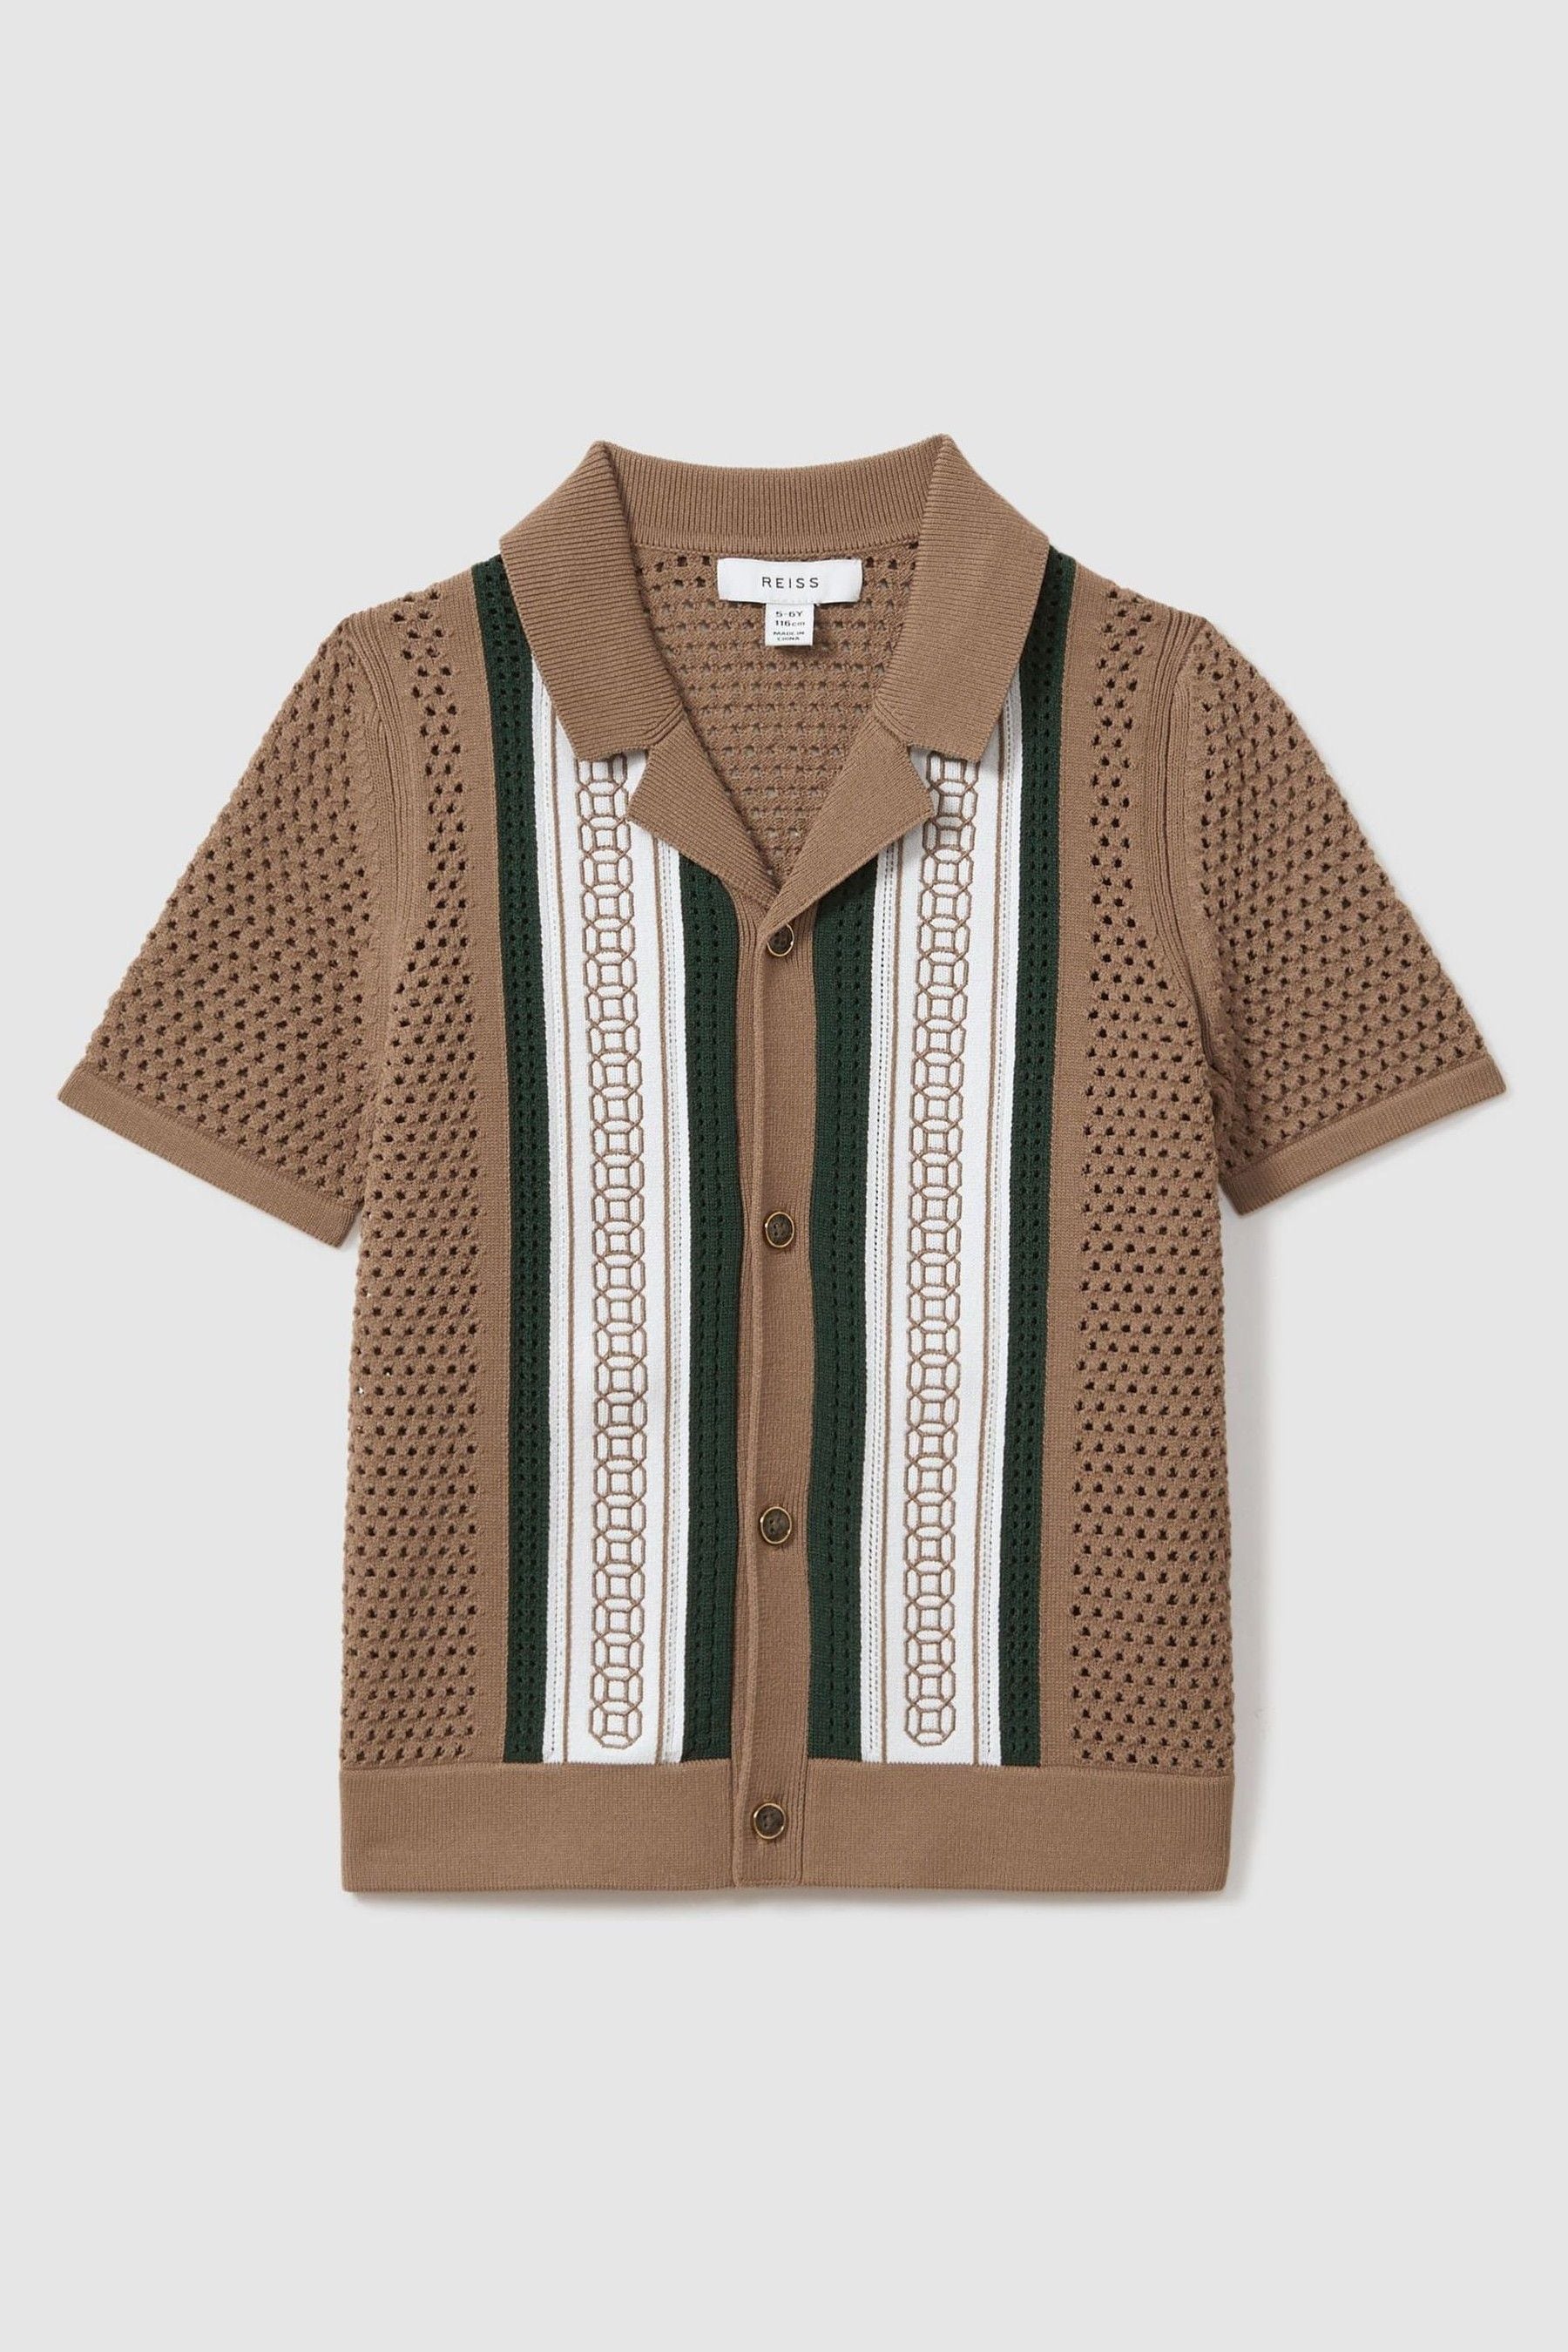 Shop Reiss Jensen - Camel/green Embroidered Cuban Collar Shirt, Uk 13-14 Yrs